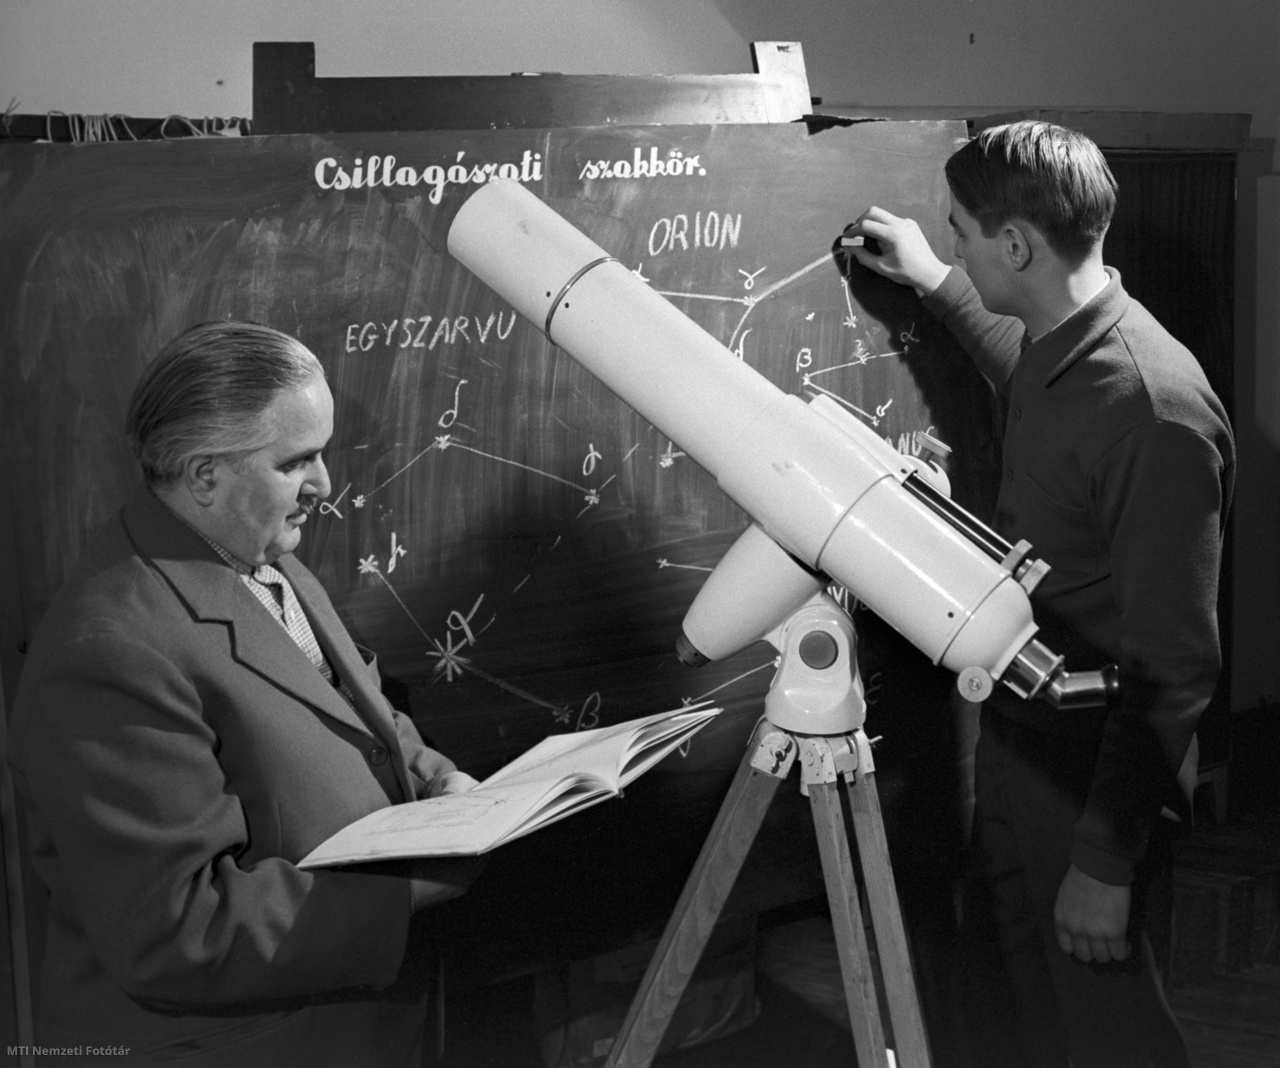 Kaposvár, 1963. február 11. Menilánz Imre és Kertész Levente csillagászati számításokat végez a pár évvel ezelőtt megalakult amatőr csillagászszakkörben, ahol hetenként háromszor találkoznak, hogy a legújabb csillagászati eredményeket, szakkönyveket tanulmányozzák, és előadásokat hallgassanak